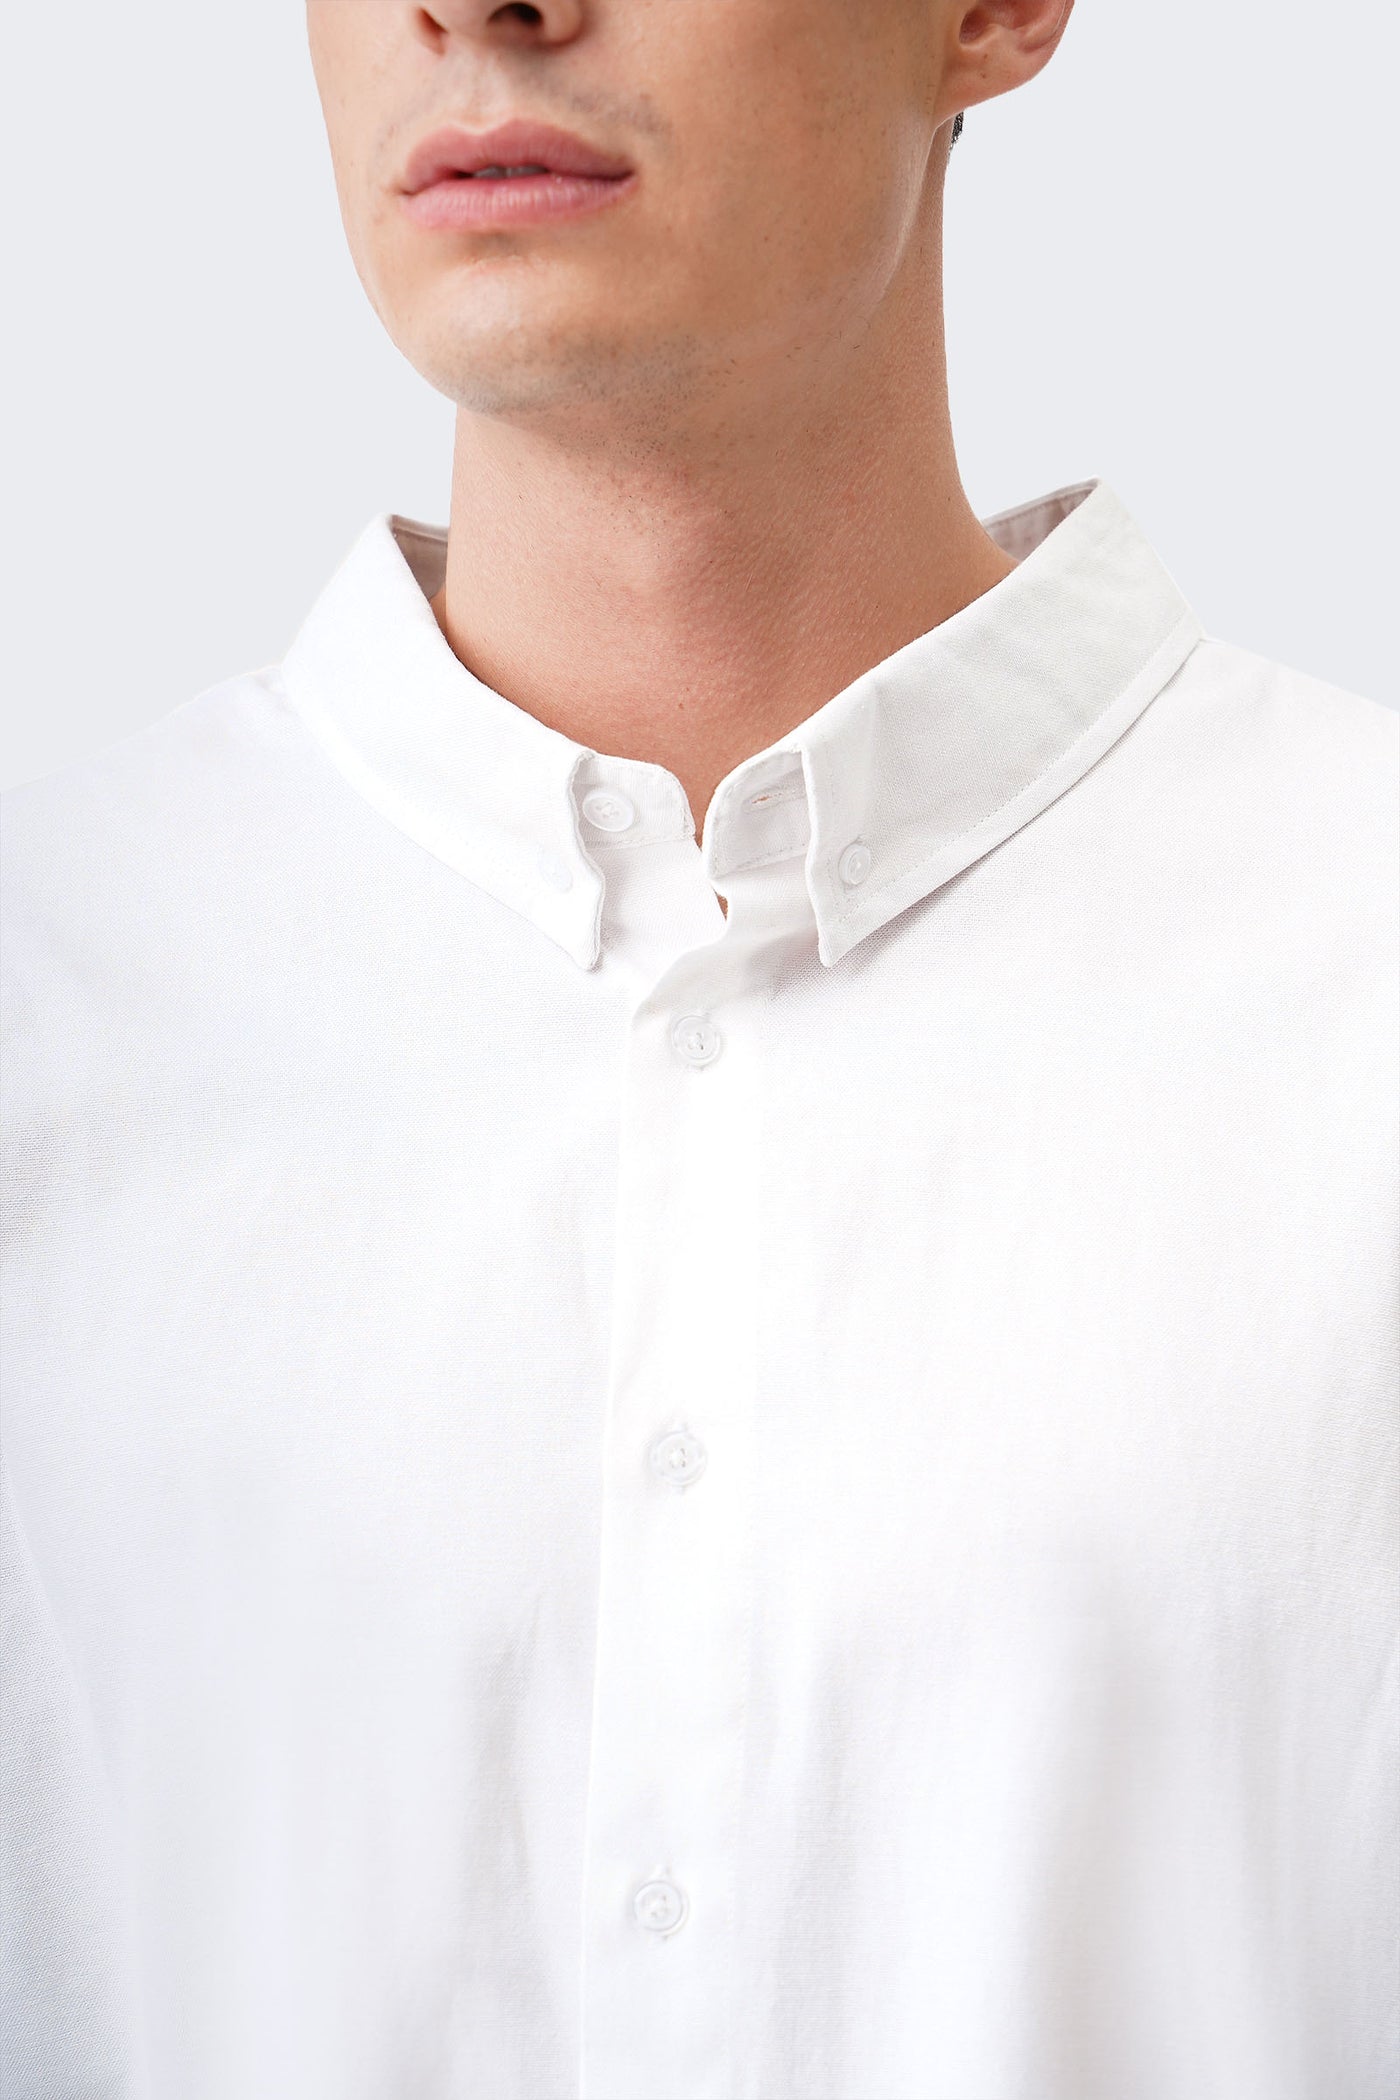 Men's Buttondown Long Sleeve Shirt - The New Standard